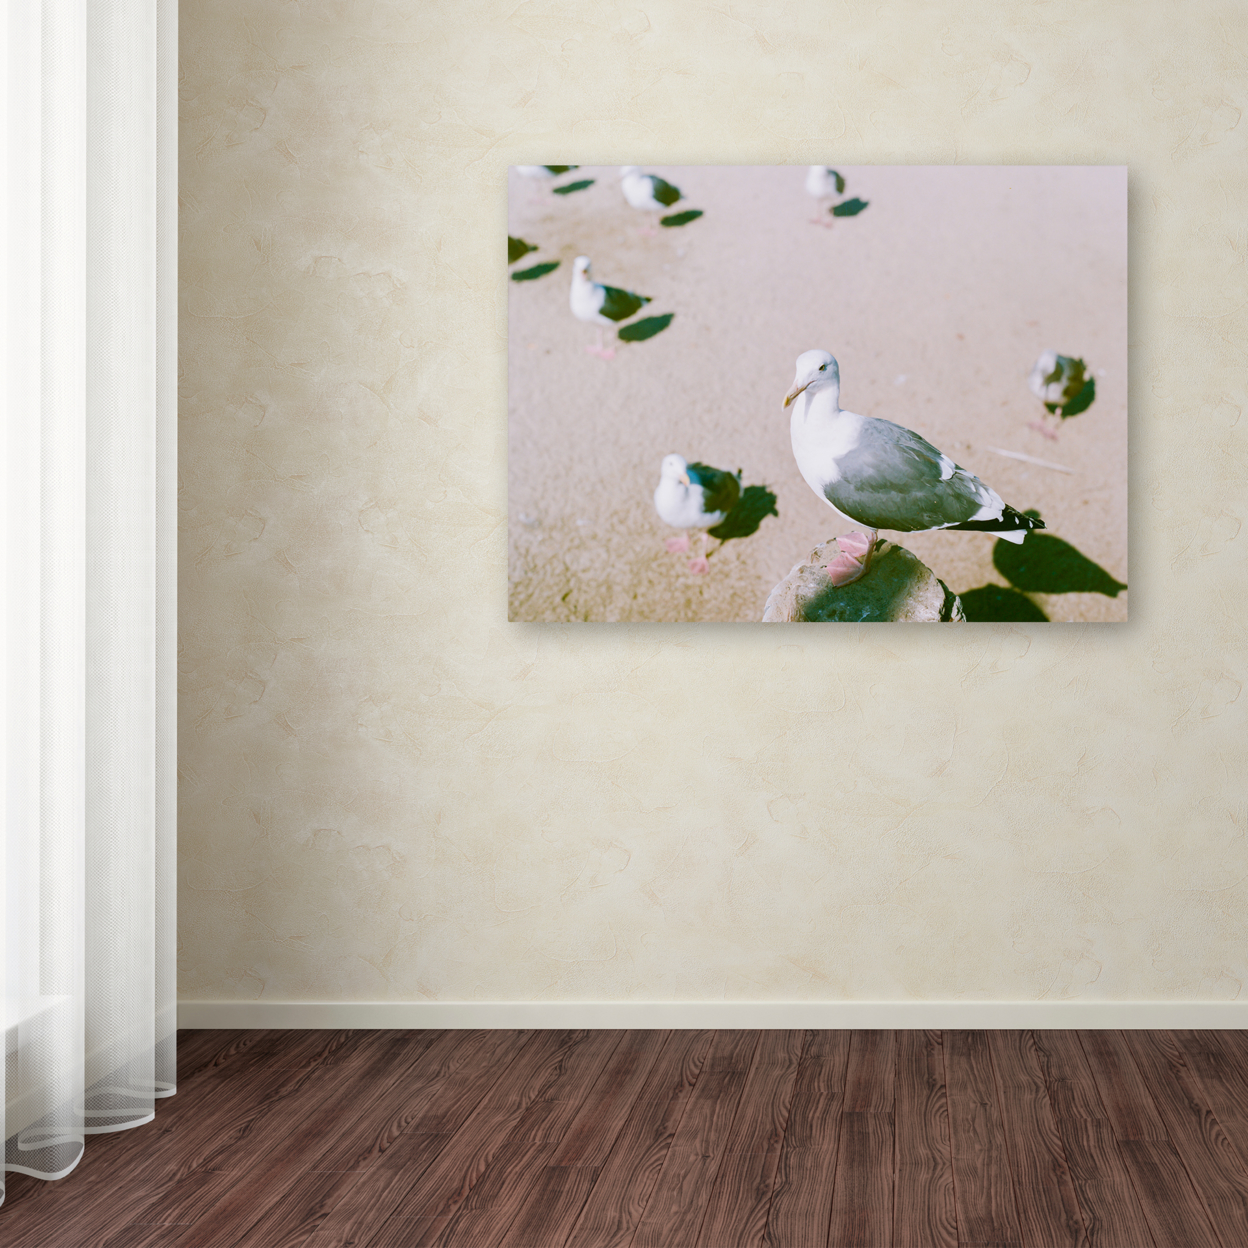 Ariane Moshayedi 'Seagull Closeup' Canvas Wall Art 35 X 47 Inches